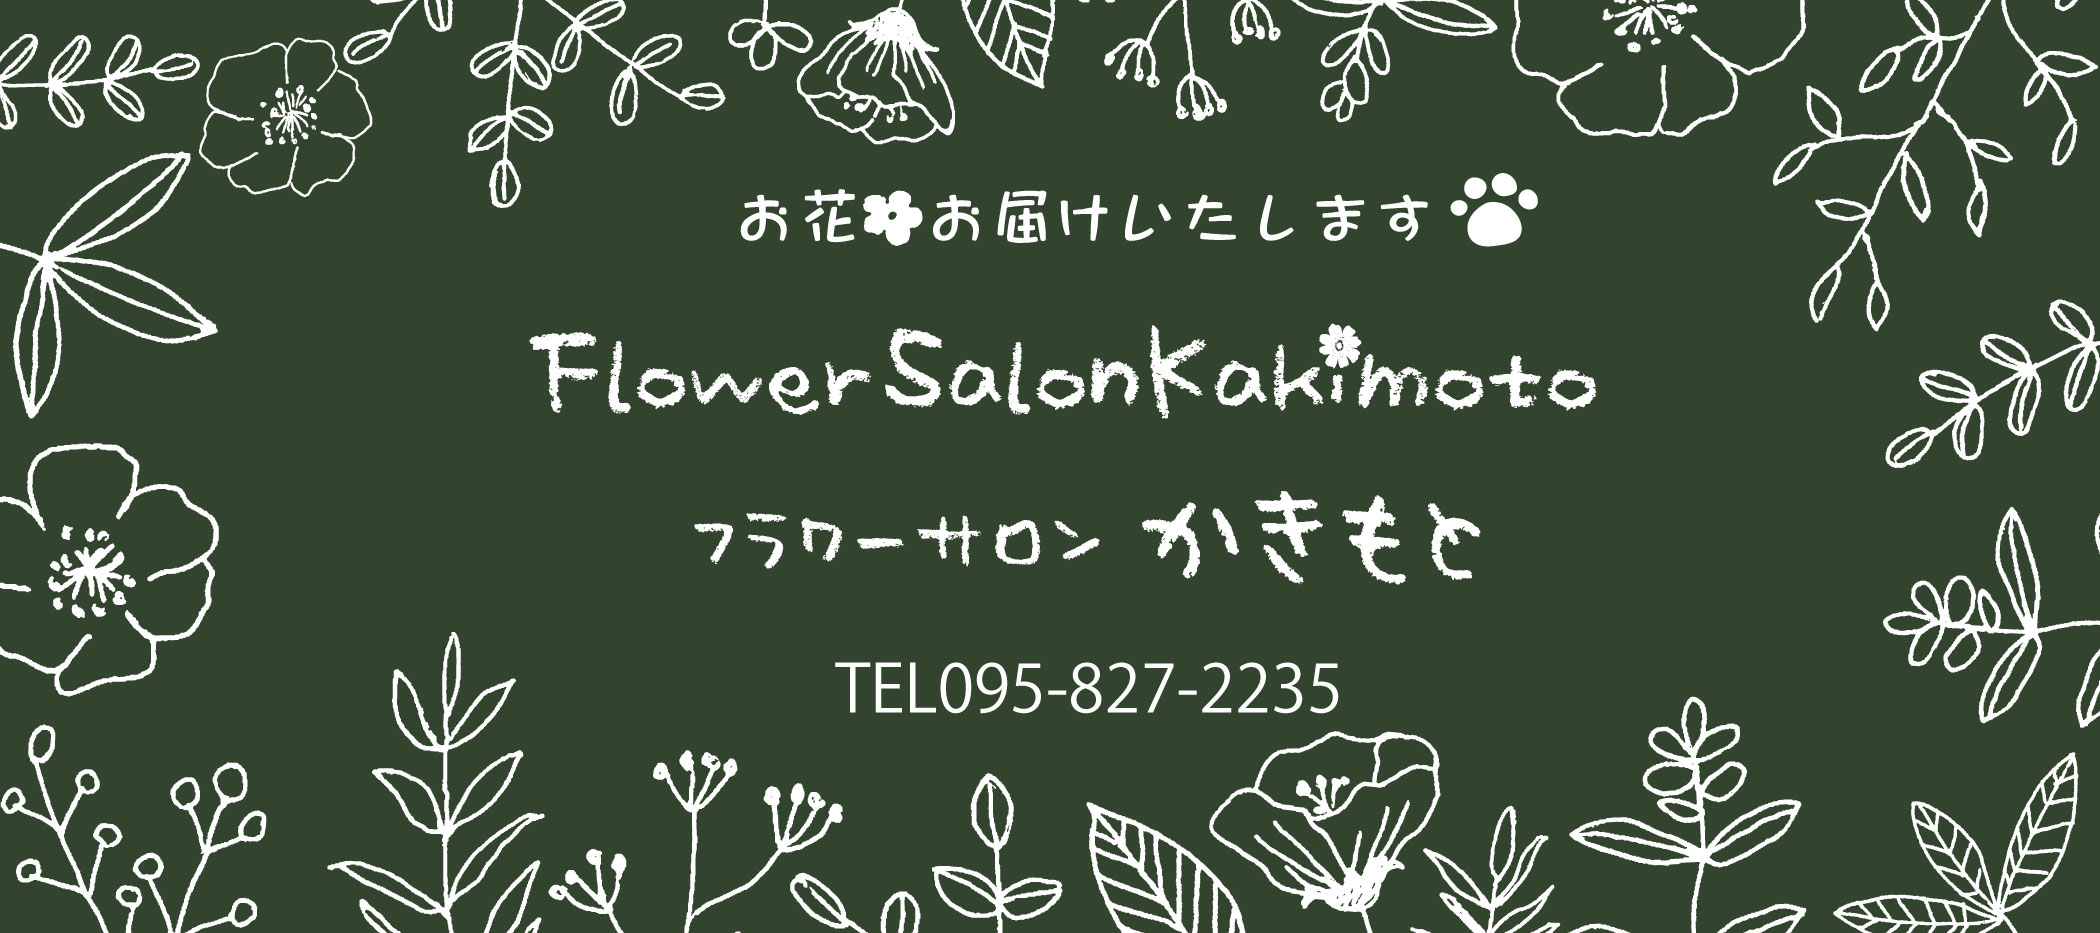 長崎のお花はフラワーサロンかきもとorゆあ華ほ